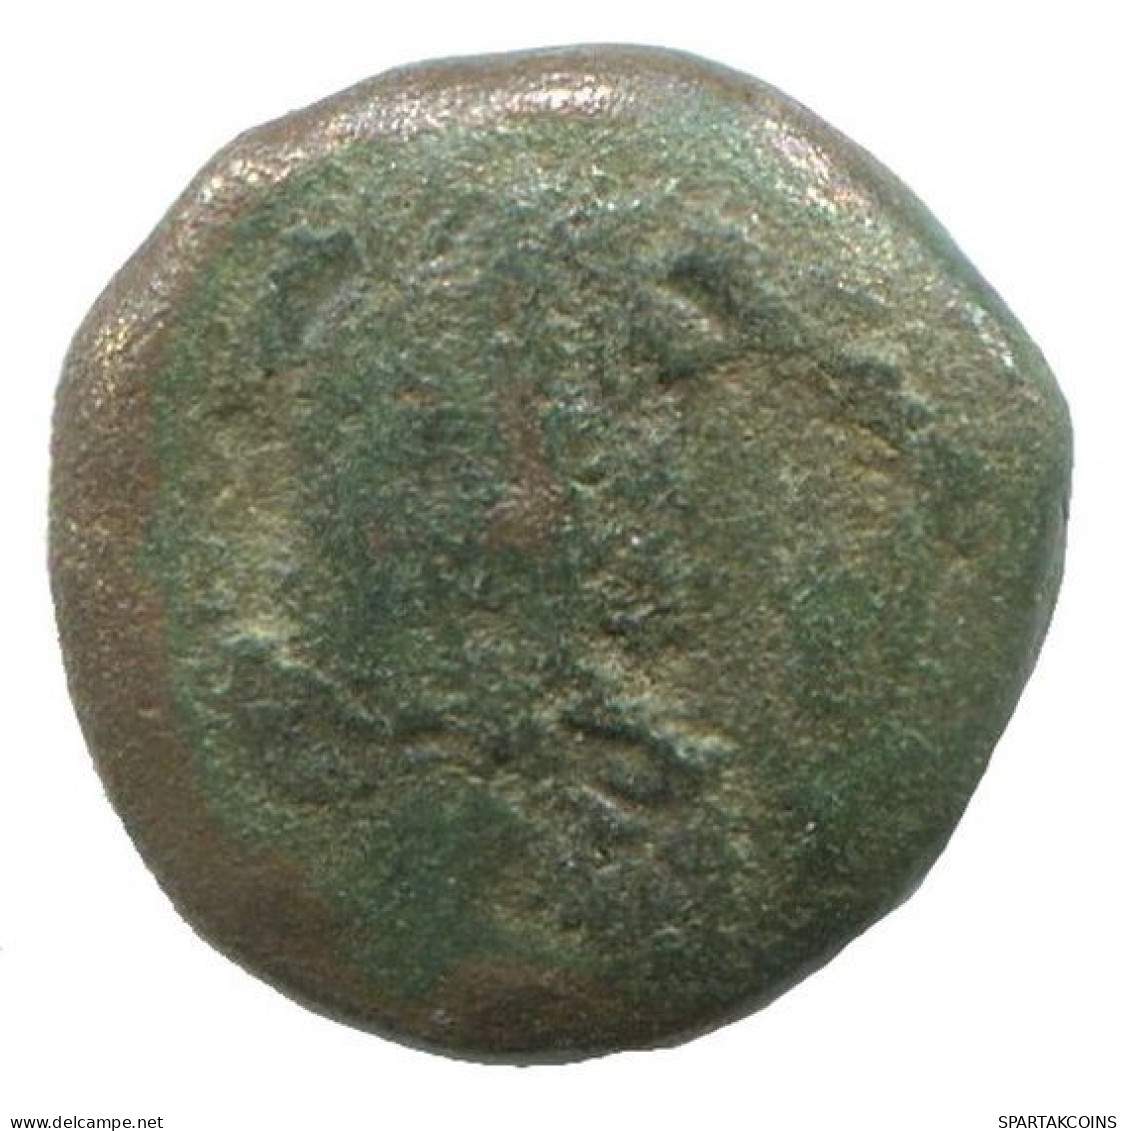 Auténtico Original GRIEGO ANTIGUO Moneda 0.8g/10mm #NNN1315.9.E.A - Griechische Münzen